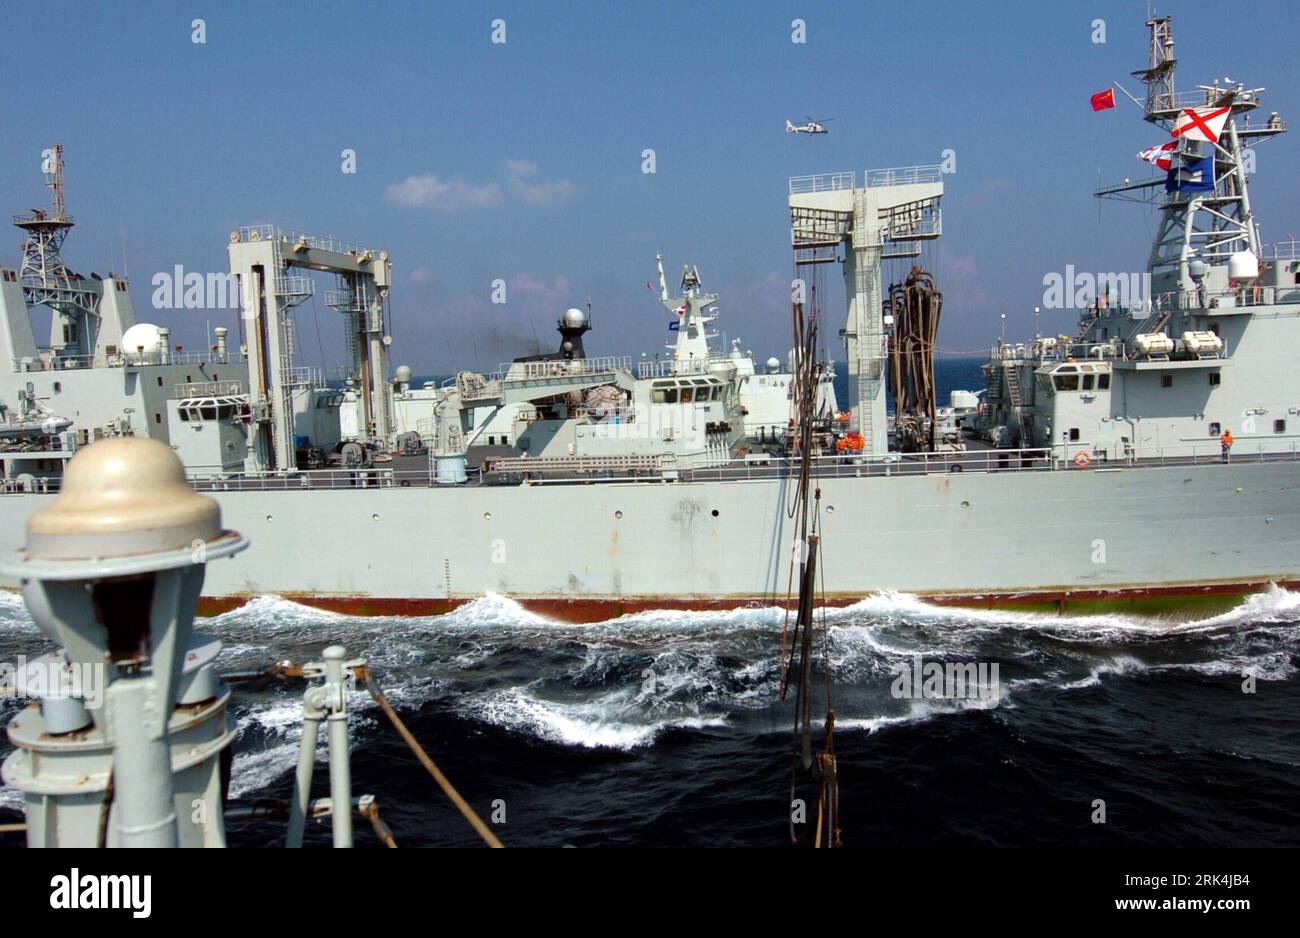 Bildnummer : 53635701 Datum : 30.11.2009 Copyright : imago/Xinhua (091130) -- GOLFE D'ADEN, 30 novembre 2009 (Xinhua) -- ravitaillement en navires Qiandaohu chinois (arrière) pour la frégate de missiles Zhoushan dans les eaux du golfe d'Aden, 30 novembre 2009. Les frégates de missiles Zhoushan et Xuzhou de la troisième flotte chinoise pour la mission d'escorte contre les pirates ont quitté le golfe d'Aden lundi pour rentrer chez eux tandis que le navire ravitailleur Qiandaohu faisait le dernier ravitaillement pour eux dans cette mission d'escorte. (Xinhua/Guo Gang) (zcq) (3)MISSION D'ESCORTE MARINE CHINOISE DU GOLFE D'ADEN PUBLICATIONxNOTxINxCHN Militär Marine Fregatte Golf kbdig Banque D'Images